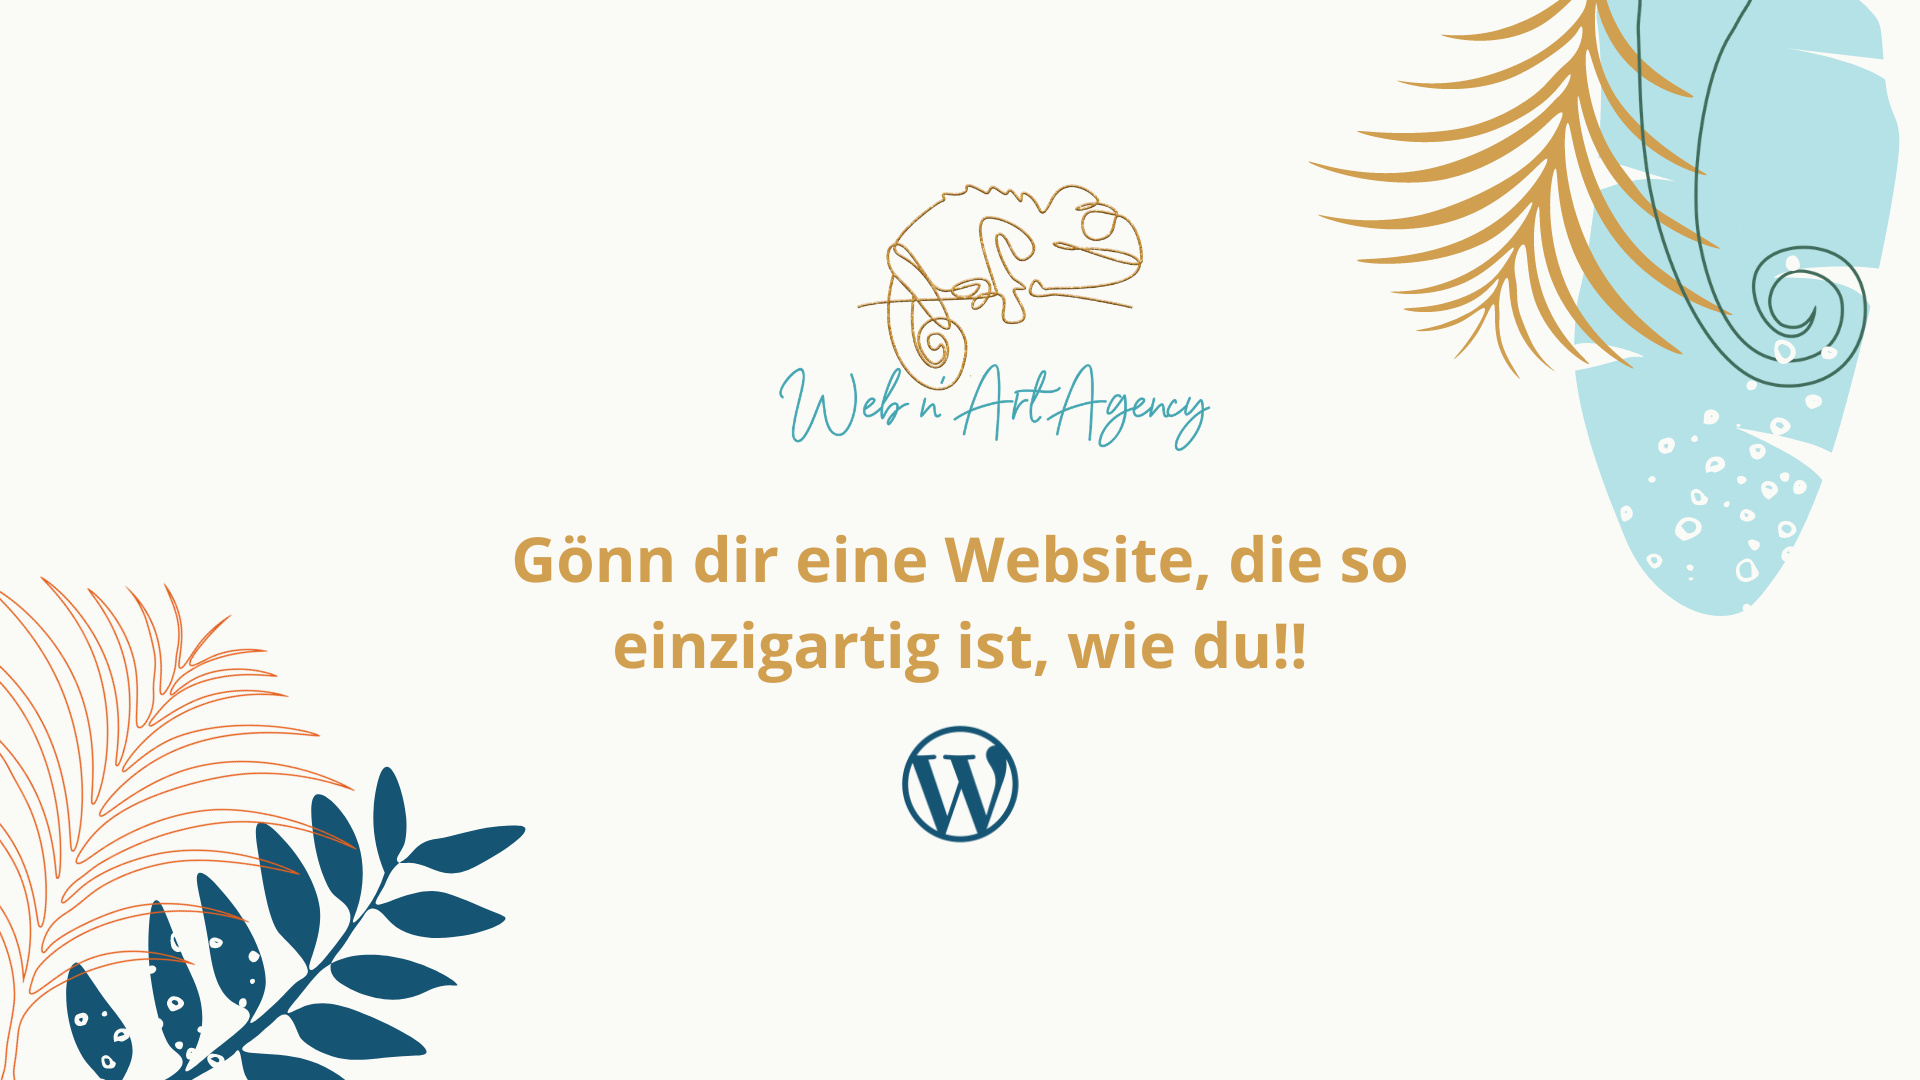 (c) Web-n-art-agency.de